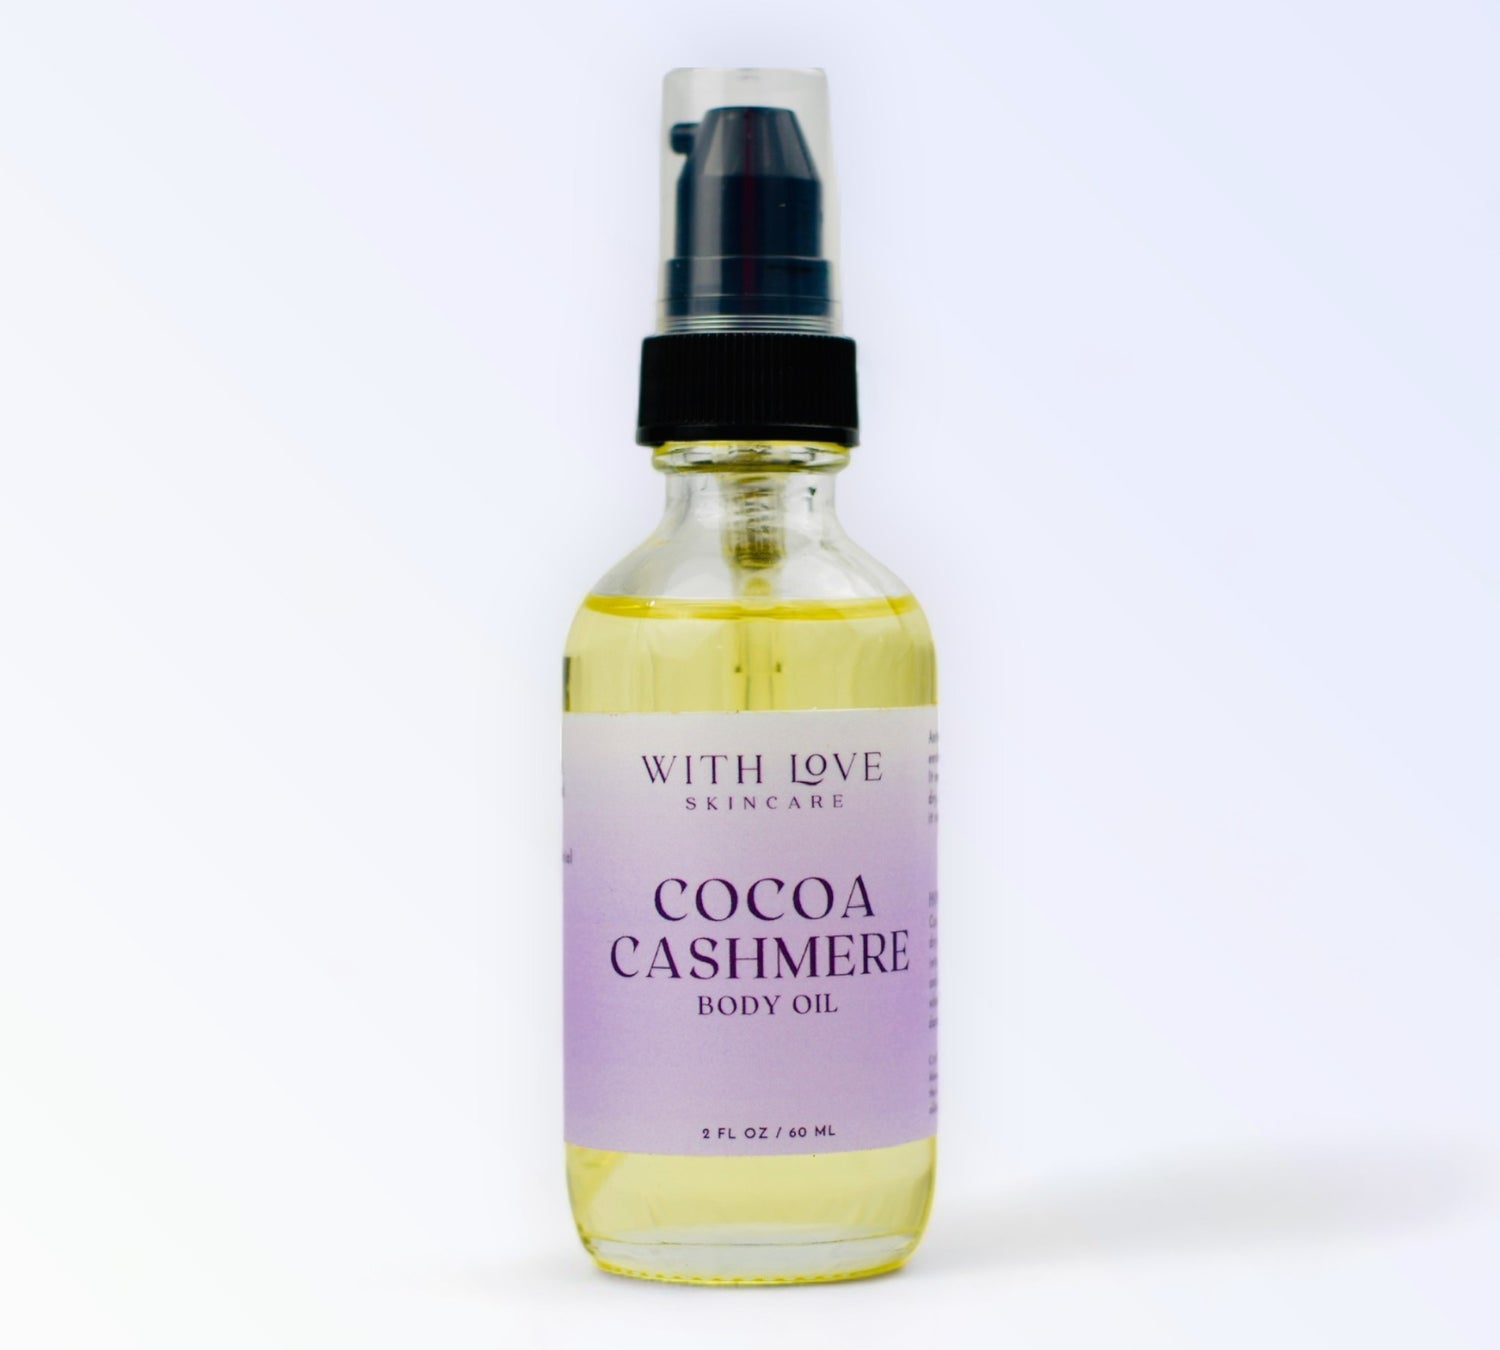 Cocoa Cashmere Body Oil